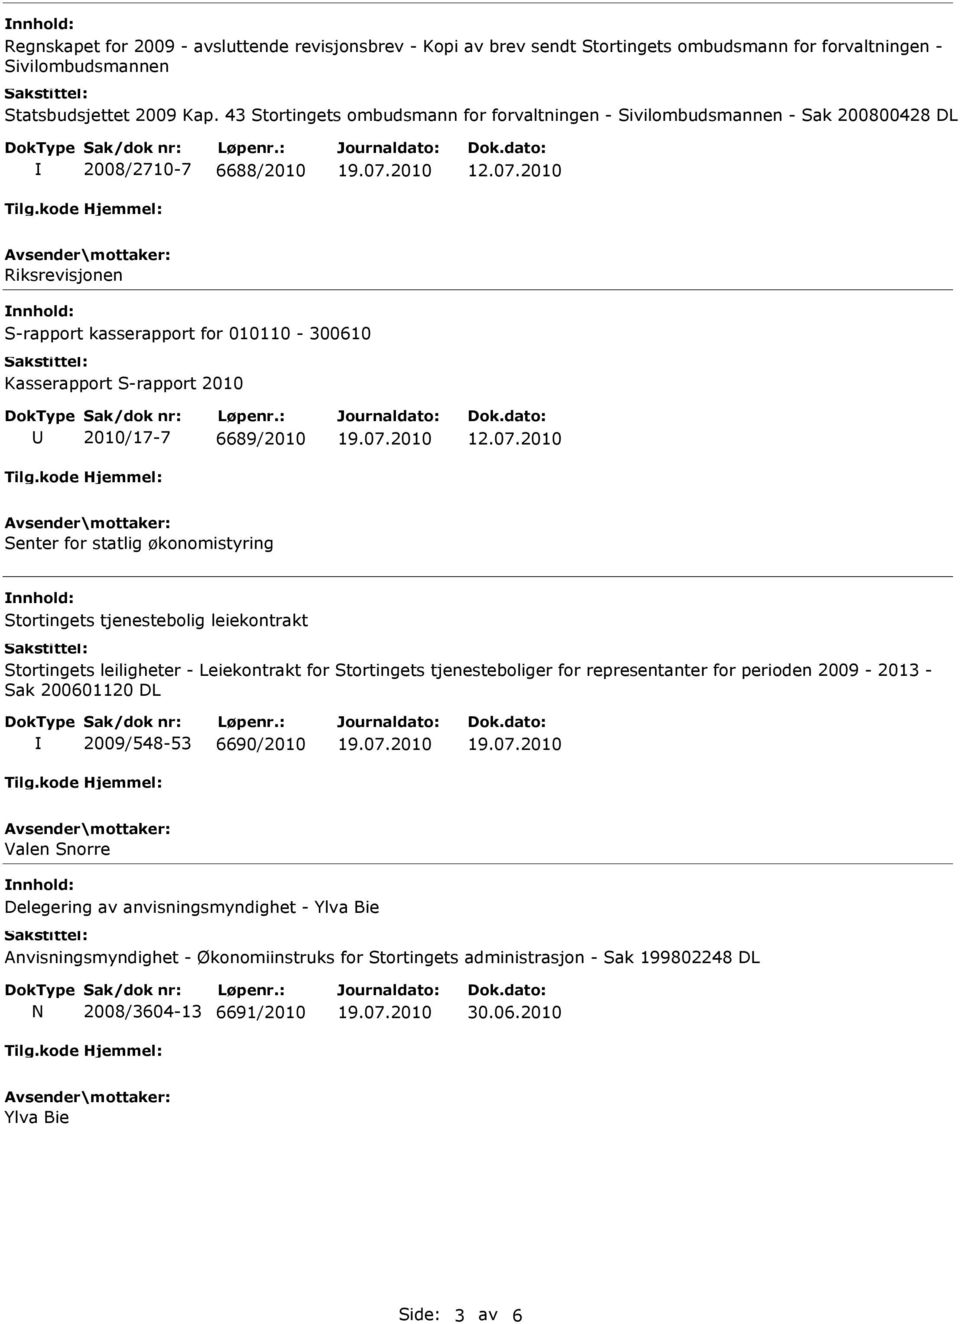 2010 Riksrevisjonen S-rapport kasserapport for 010110-300610 Kasserapport S-rapport 2010 2010/17-7 6689/2010 12.07.